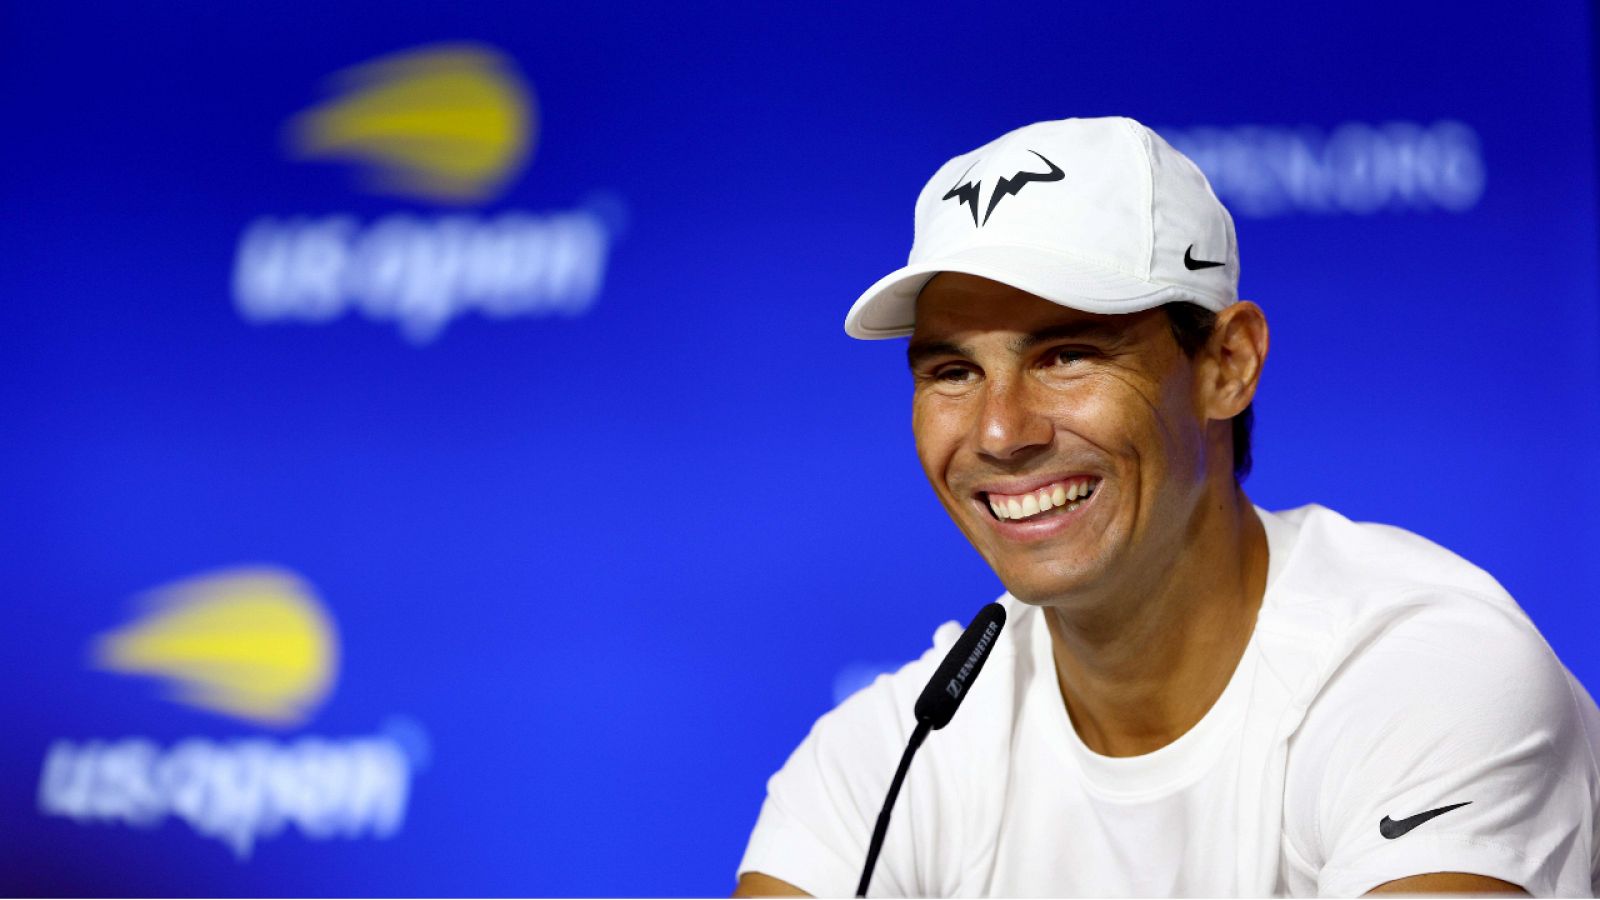 La ausencia de Djokovic aumenta las opciones de Nadal en el US Open - ver ahora